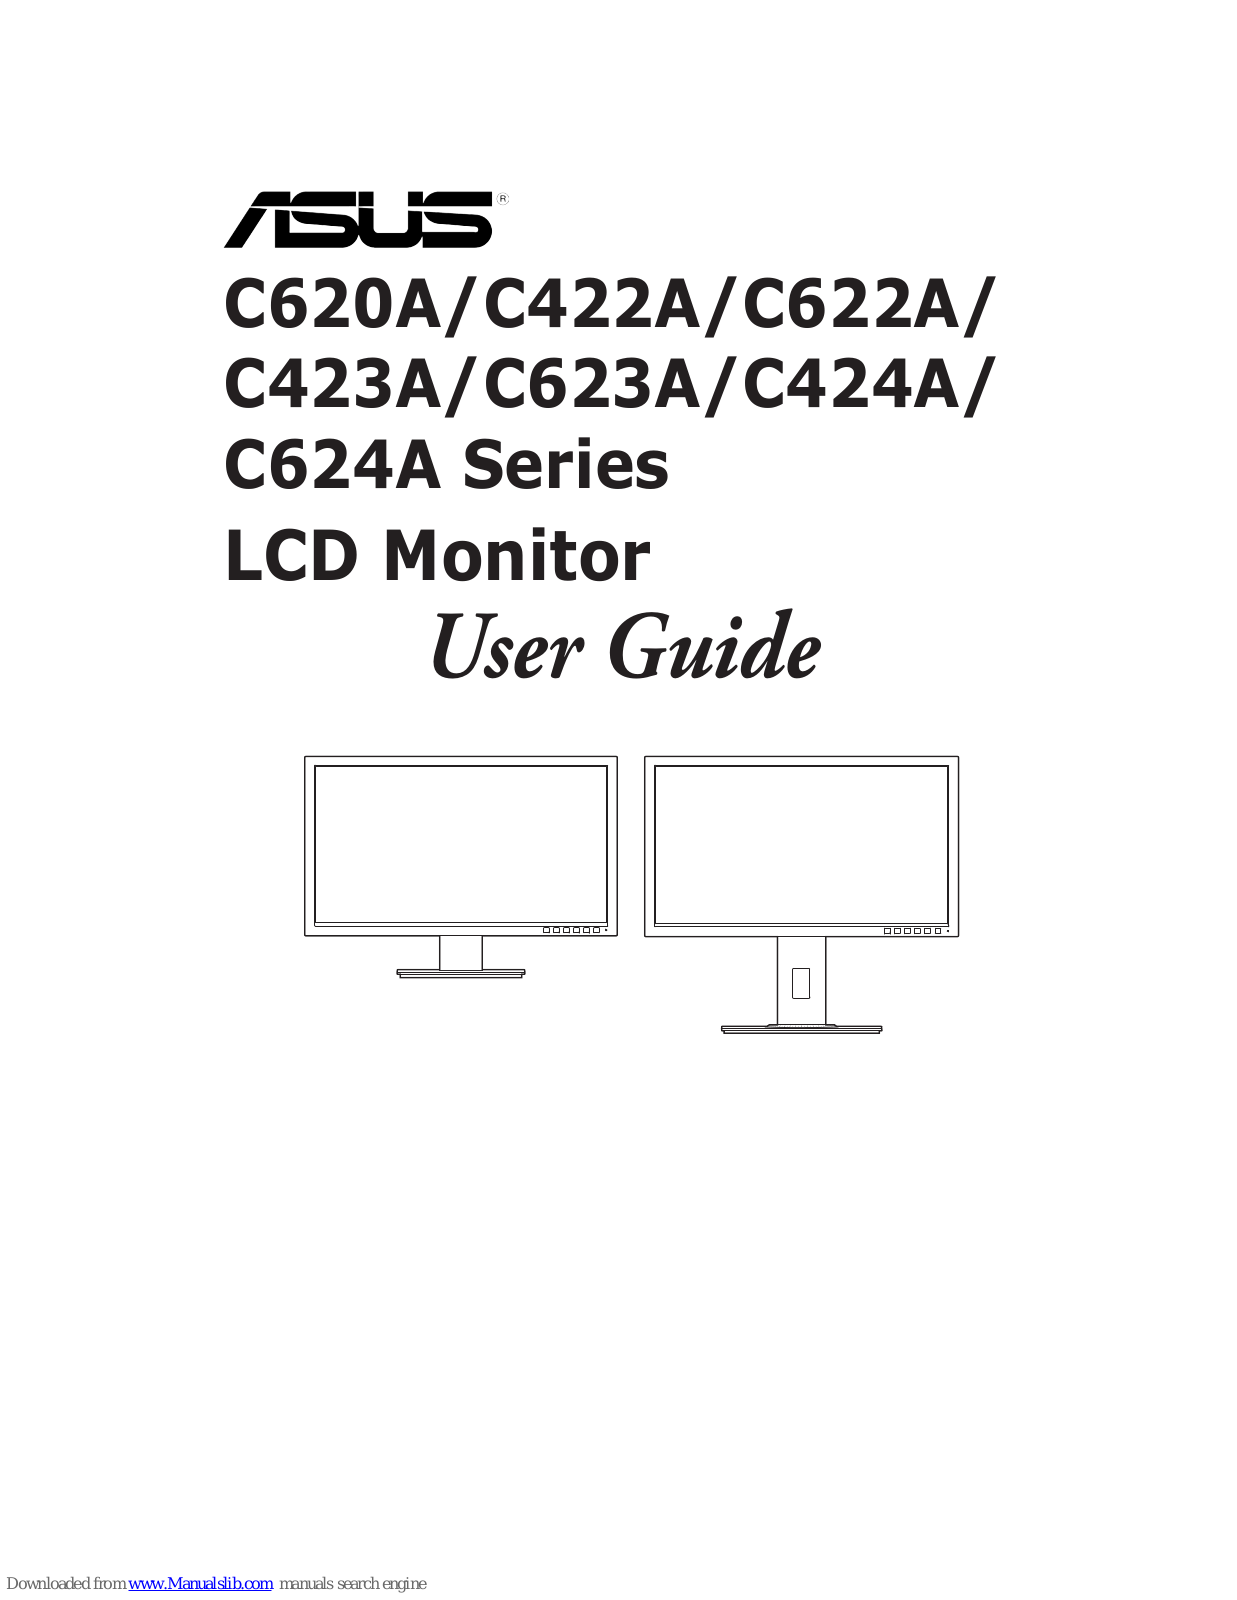 Asus C620A, C622A, C423A, C623A, C422A User Manual